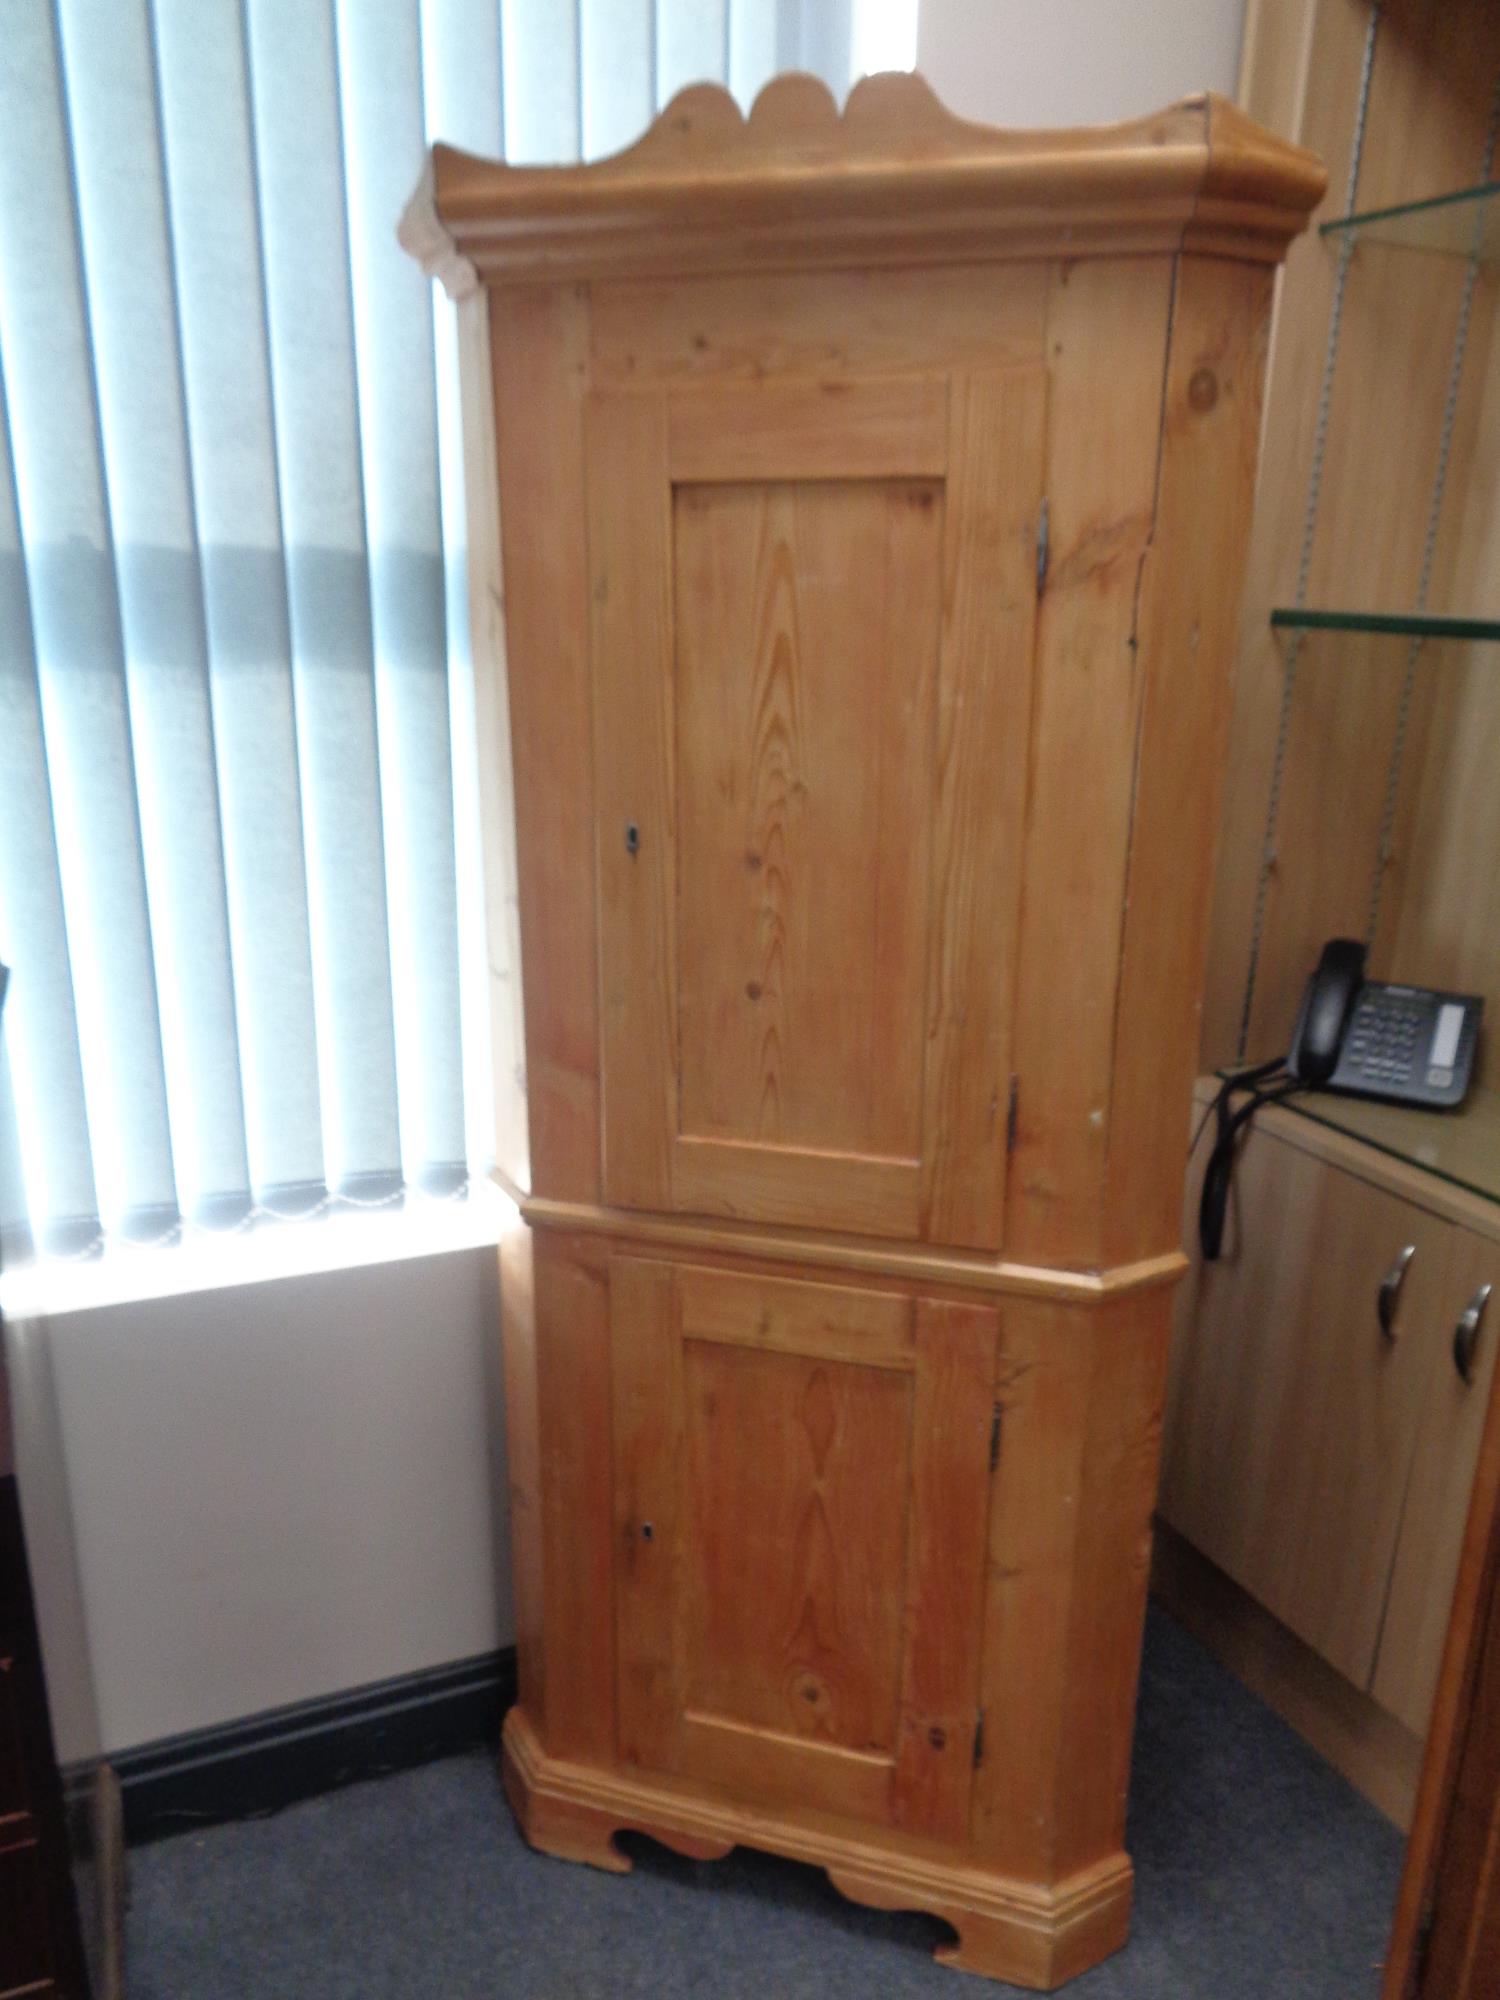 An antique pine double door corner cabinet